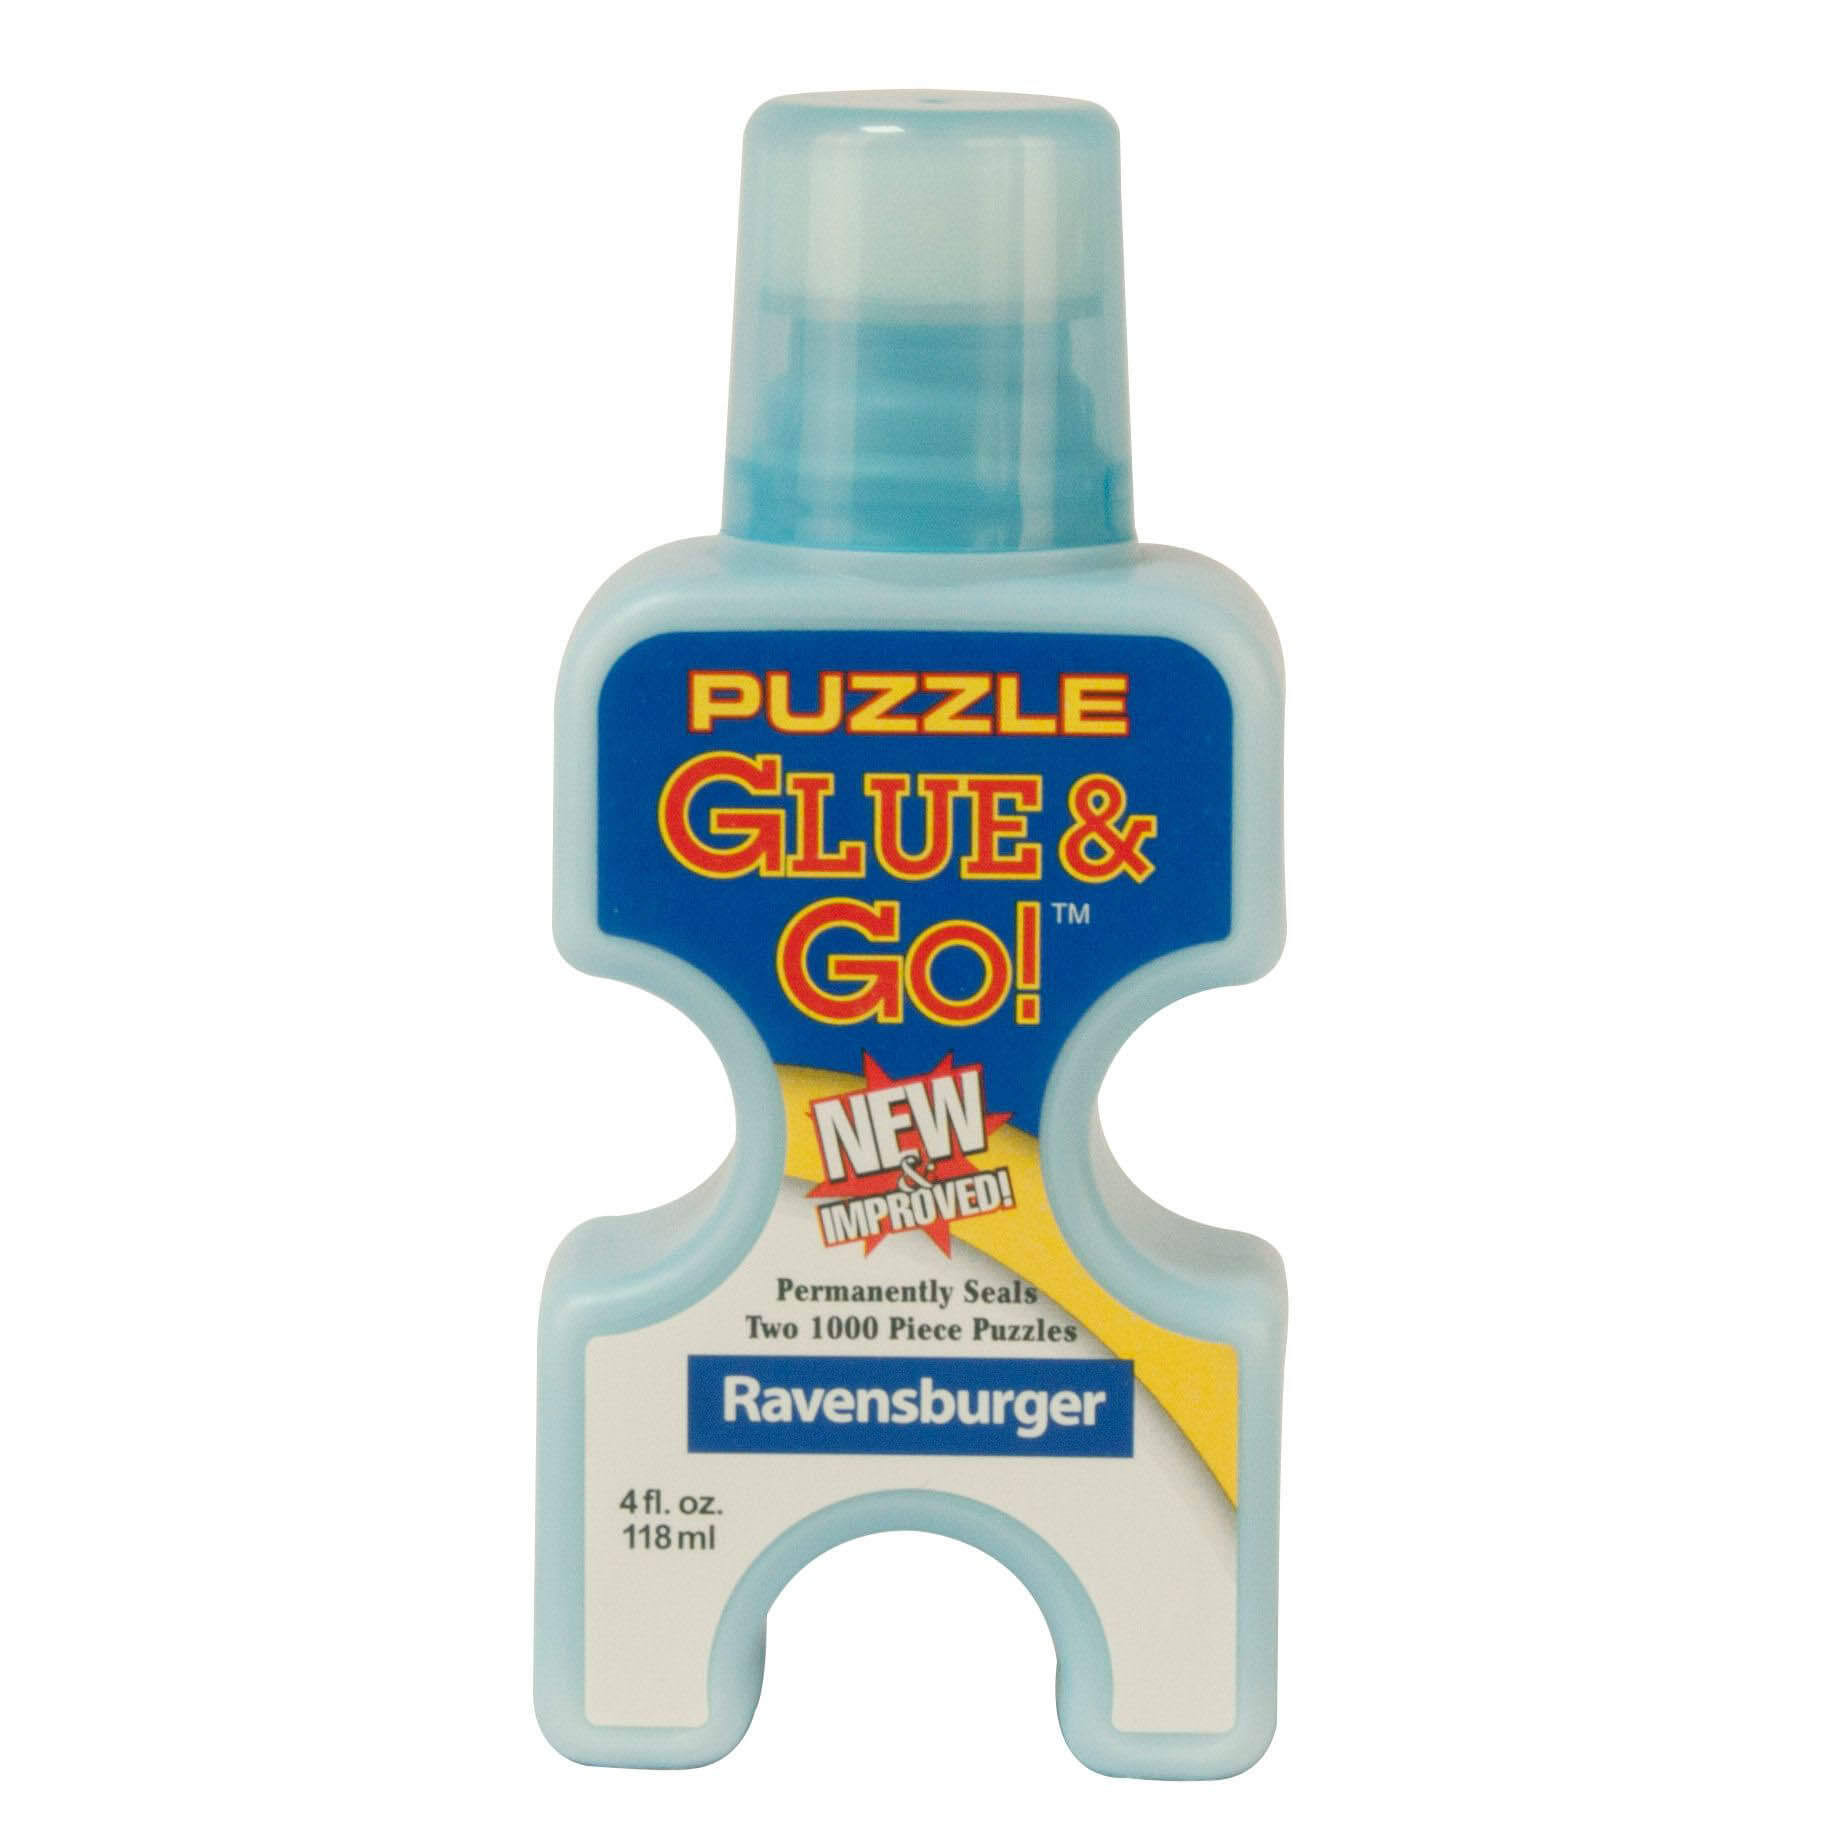 Ravensburger Puzzle: Glue & Go